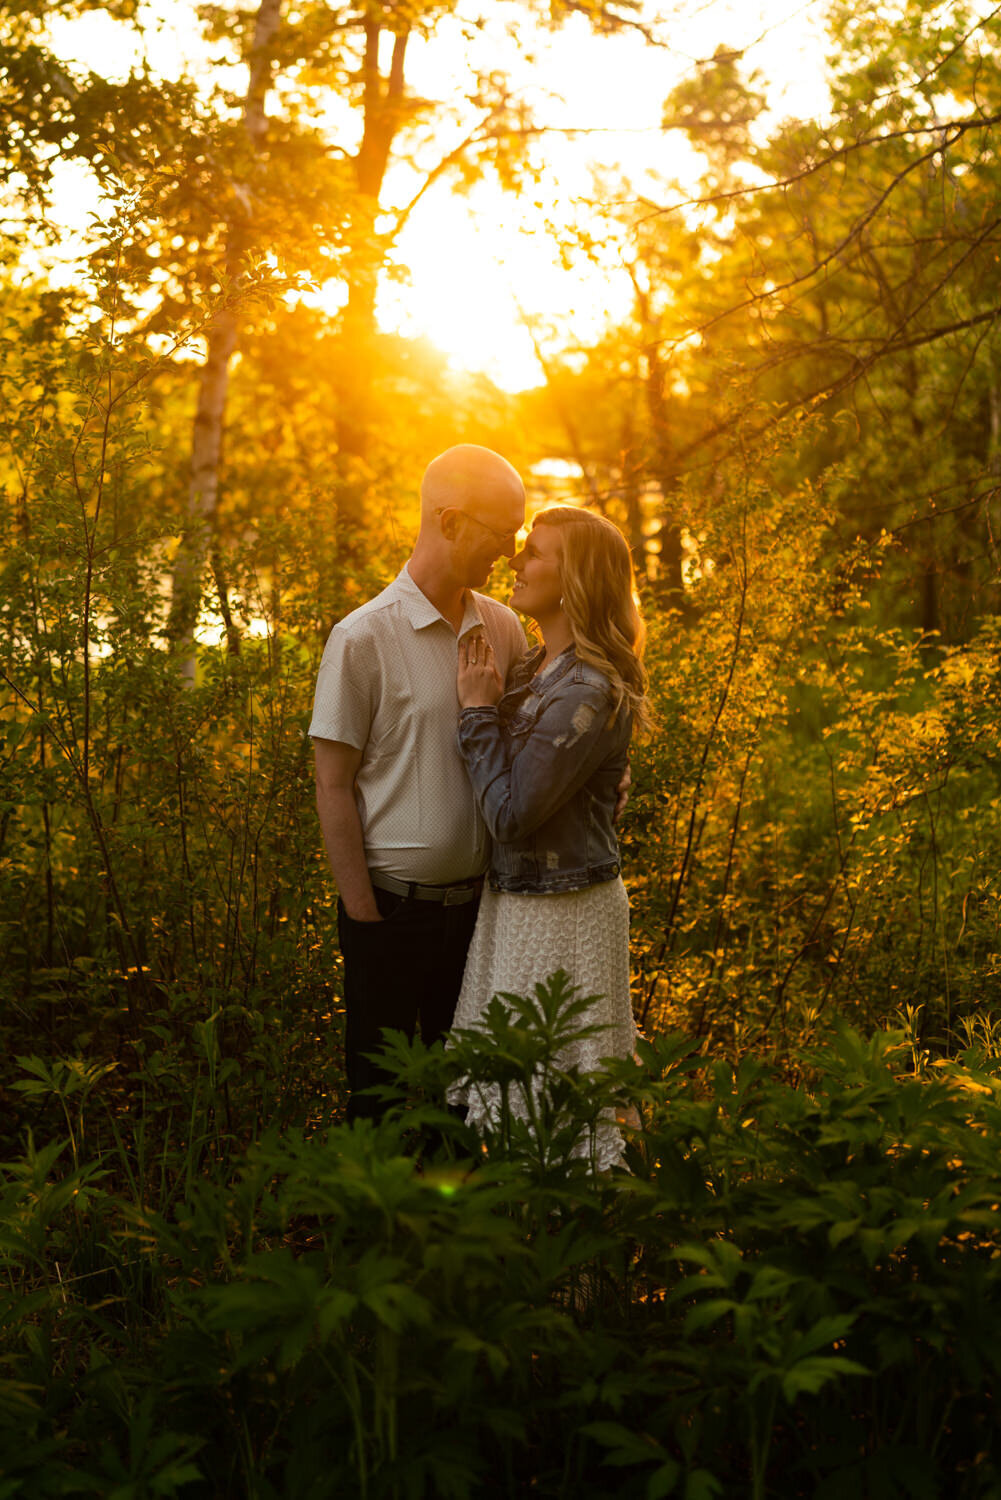 Eden and Matt - Minnesota Sunset Engagement Photography - Lebanon Hills Regional Park - RKH Images (209 of 342)